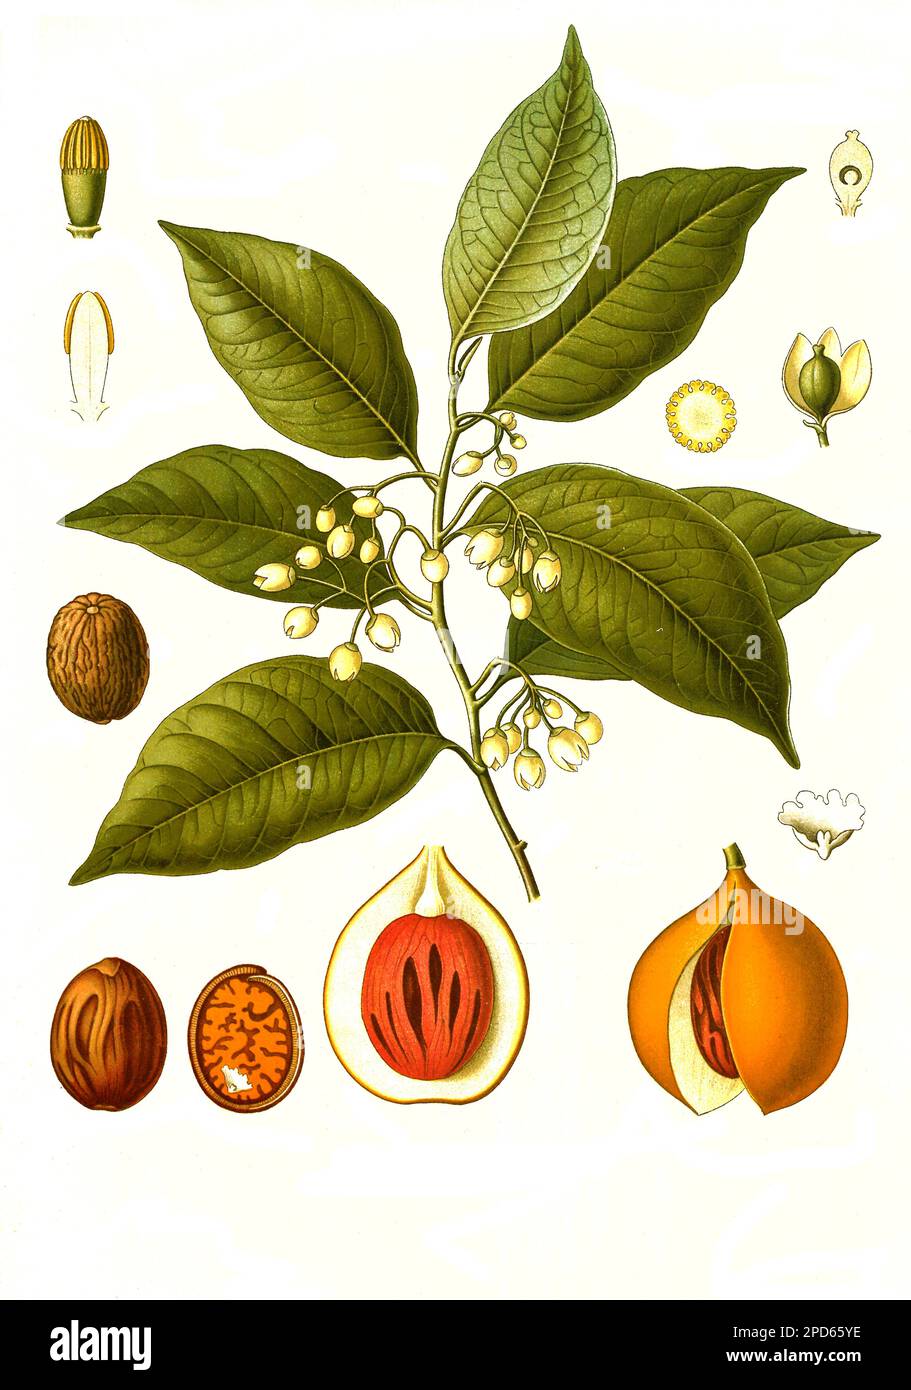 Heilpflanze, Muskatnussbaum, (Myristica fragrans) ist eine Pflanzenart aus der Familie der Muskatnussgewächse, Historisch, digital restaurierte Reproduktion von einer Vorlage aus dem 19. Jahrhundert, Stock Photo